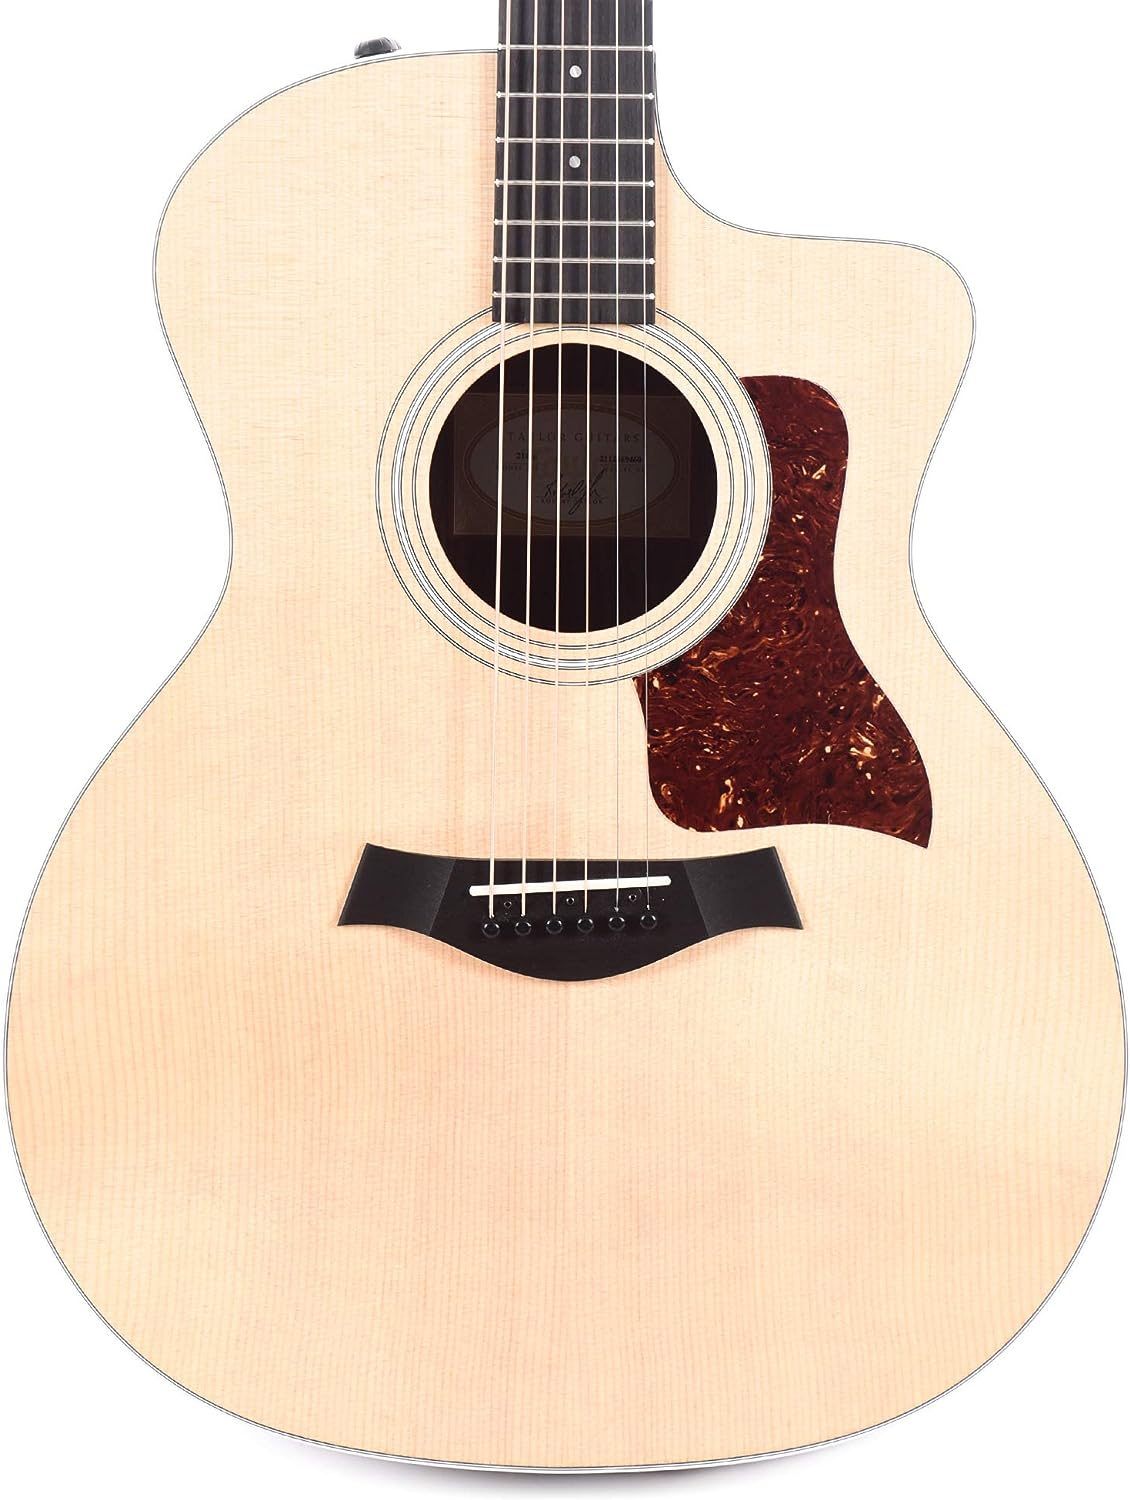 Taylor 214ce Acoustic electric guitar w/bag